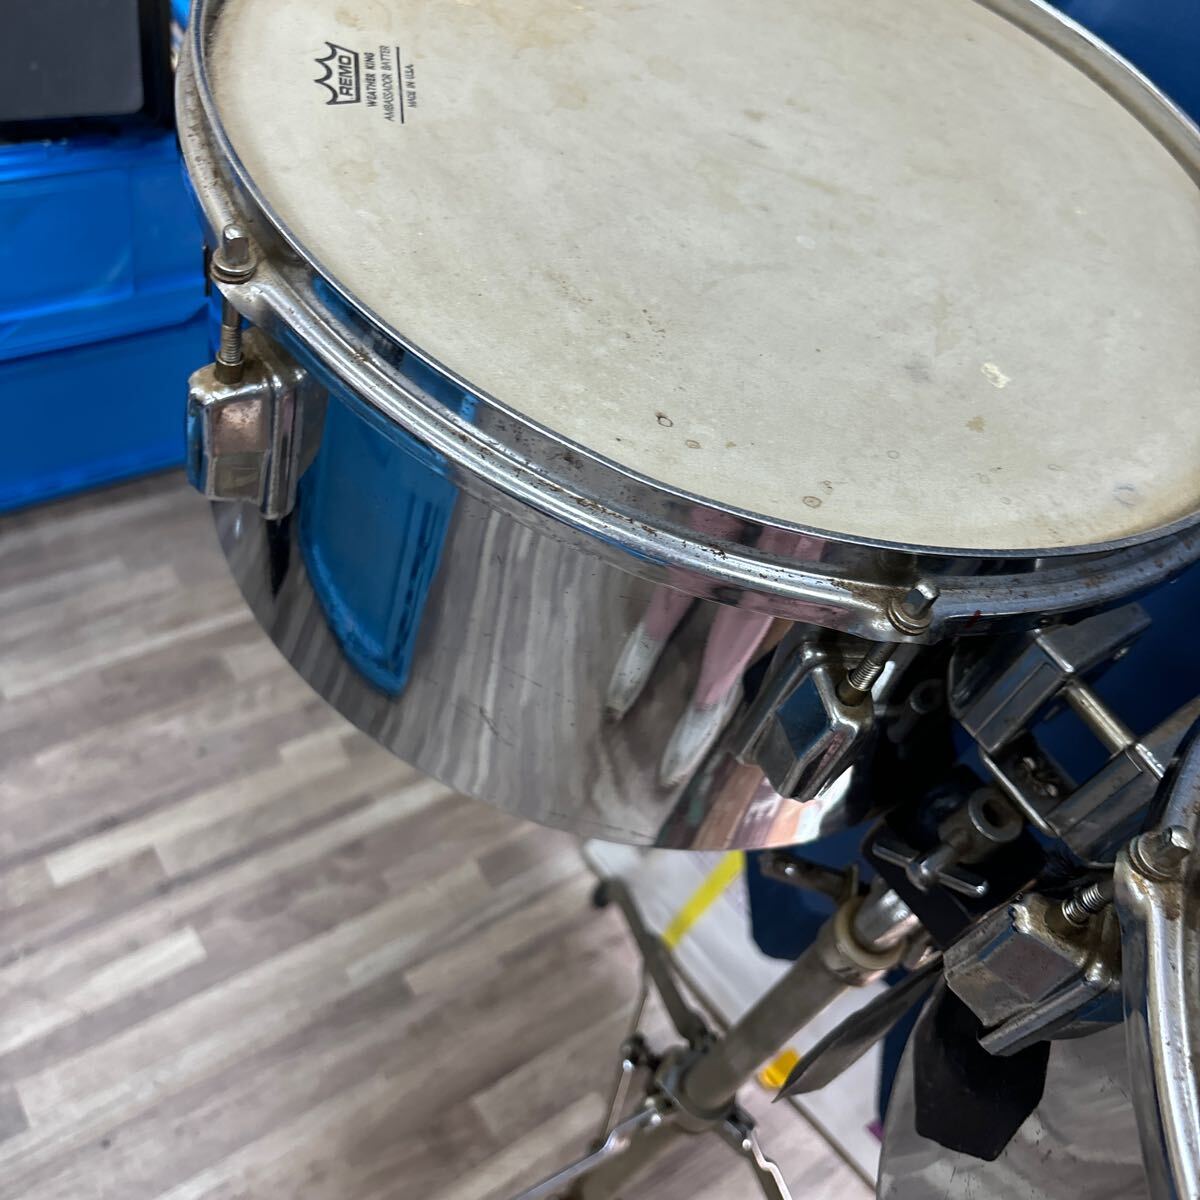 TA-765*Pearl барабан жемчуг REMO WEATHER KING AMBASSADOR BATTER futoshi тамбурин без тарелочек ударные инструменты подробности неизвестен 